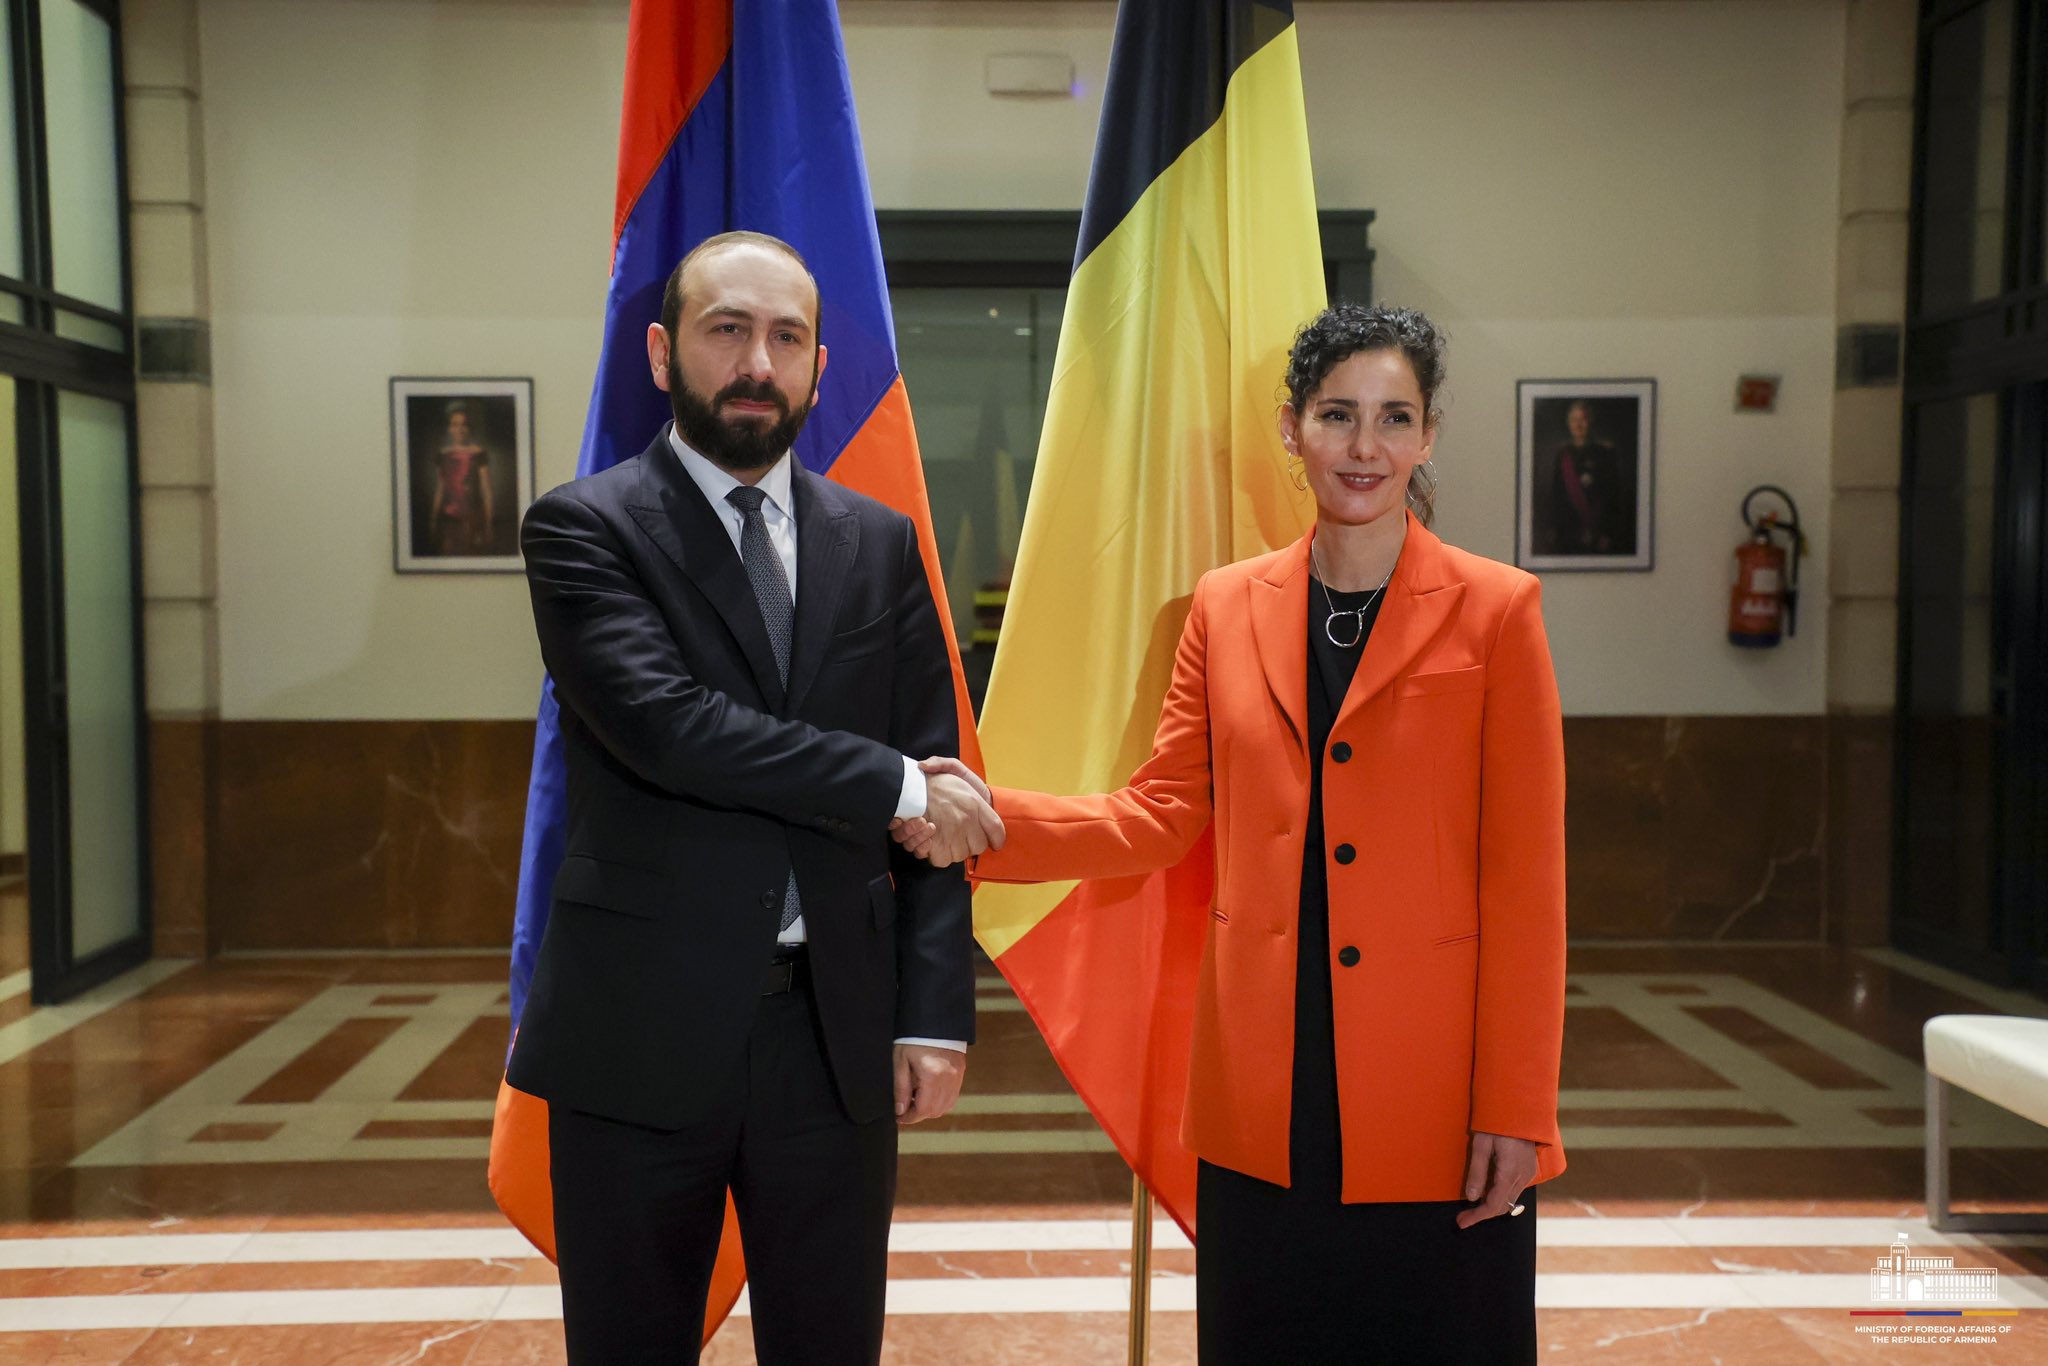 Հայաստանն ակնկալում է 2024-ին համատեղ աշխատել ԵՄ խորհրդում Բելգիայի նախագահության հետ՝ ավելի խորացնելու և ամրապնդելու մեր գործընկերությունը ԵՄ-ի հետ. Միրզոյան